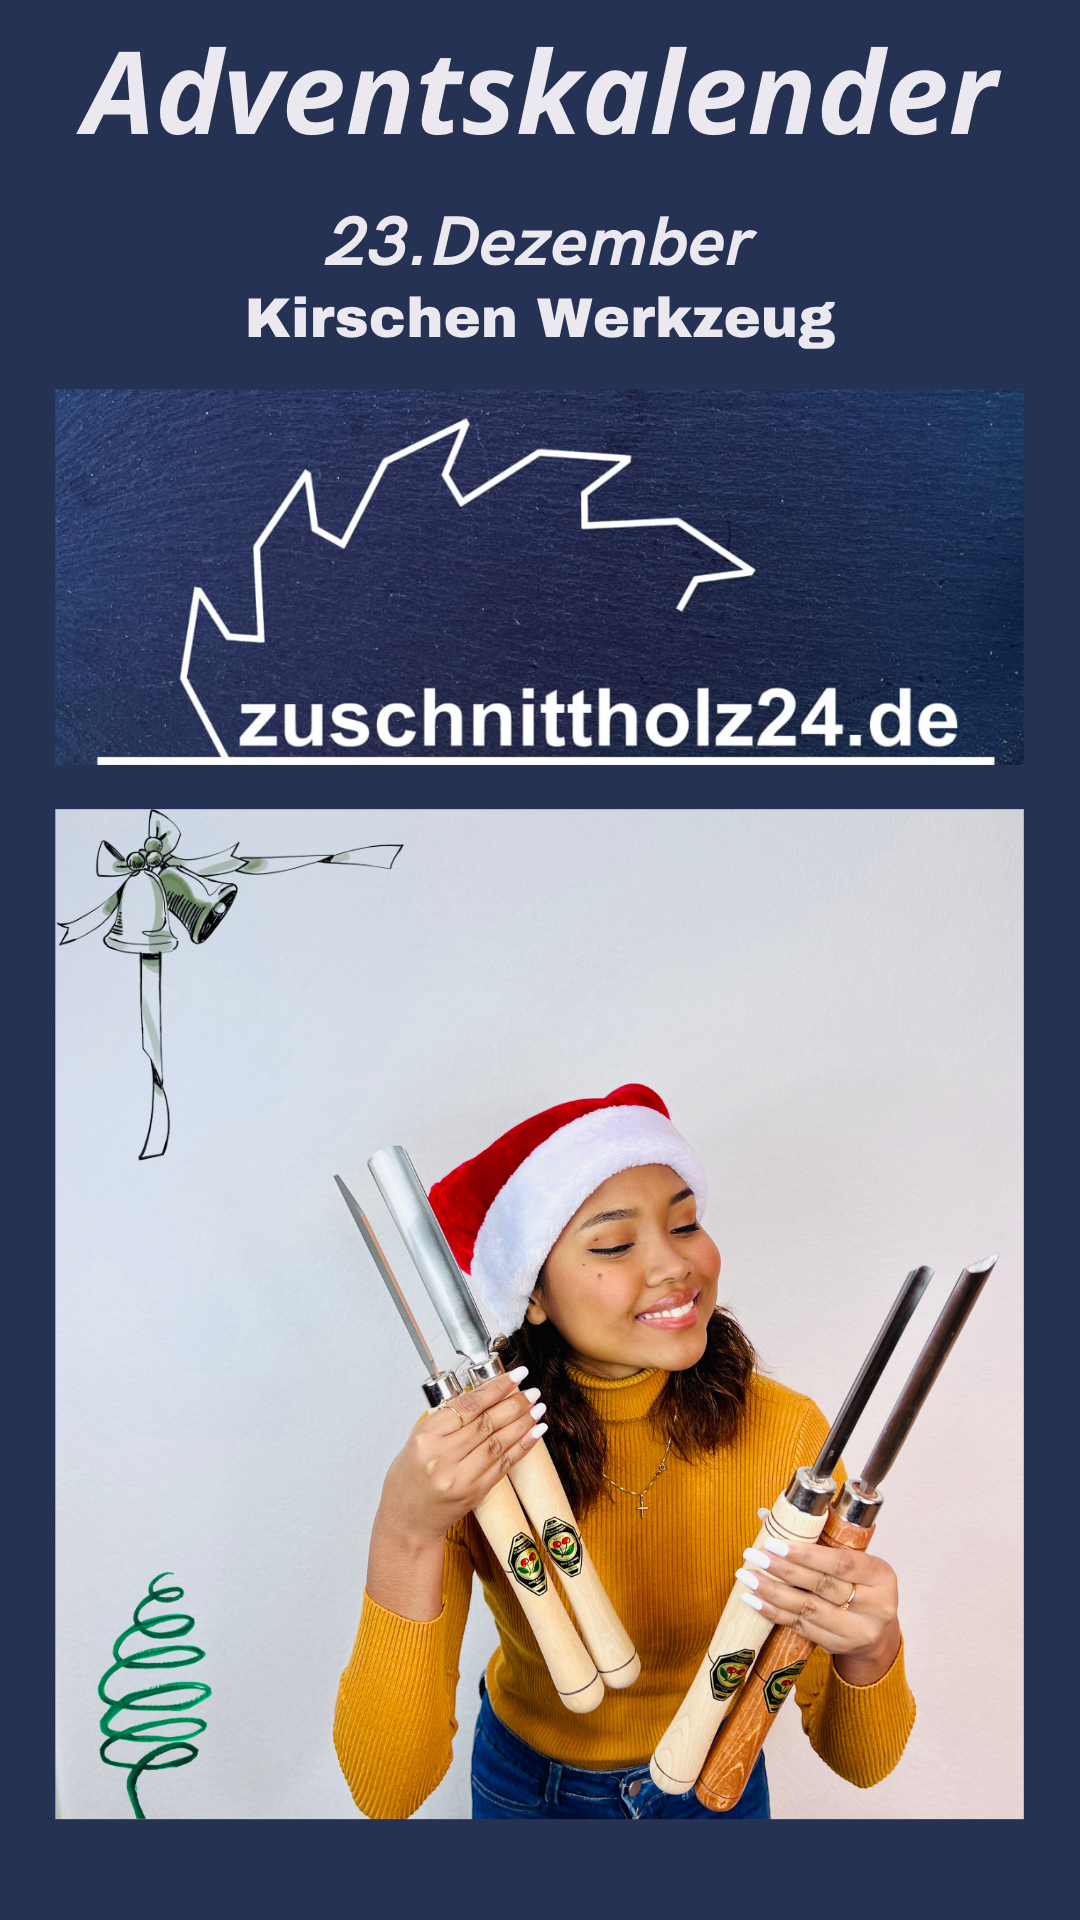 23.Adventskalender_Zuschnittholz24